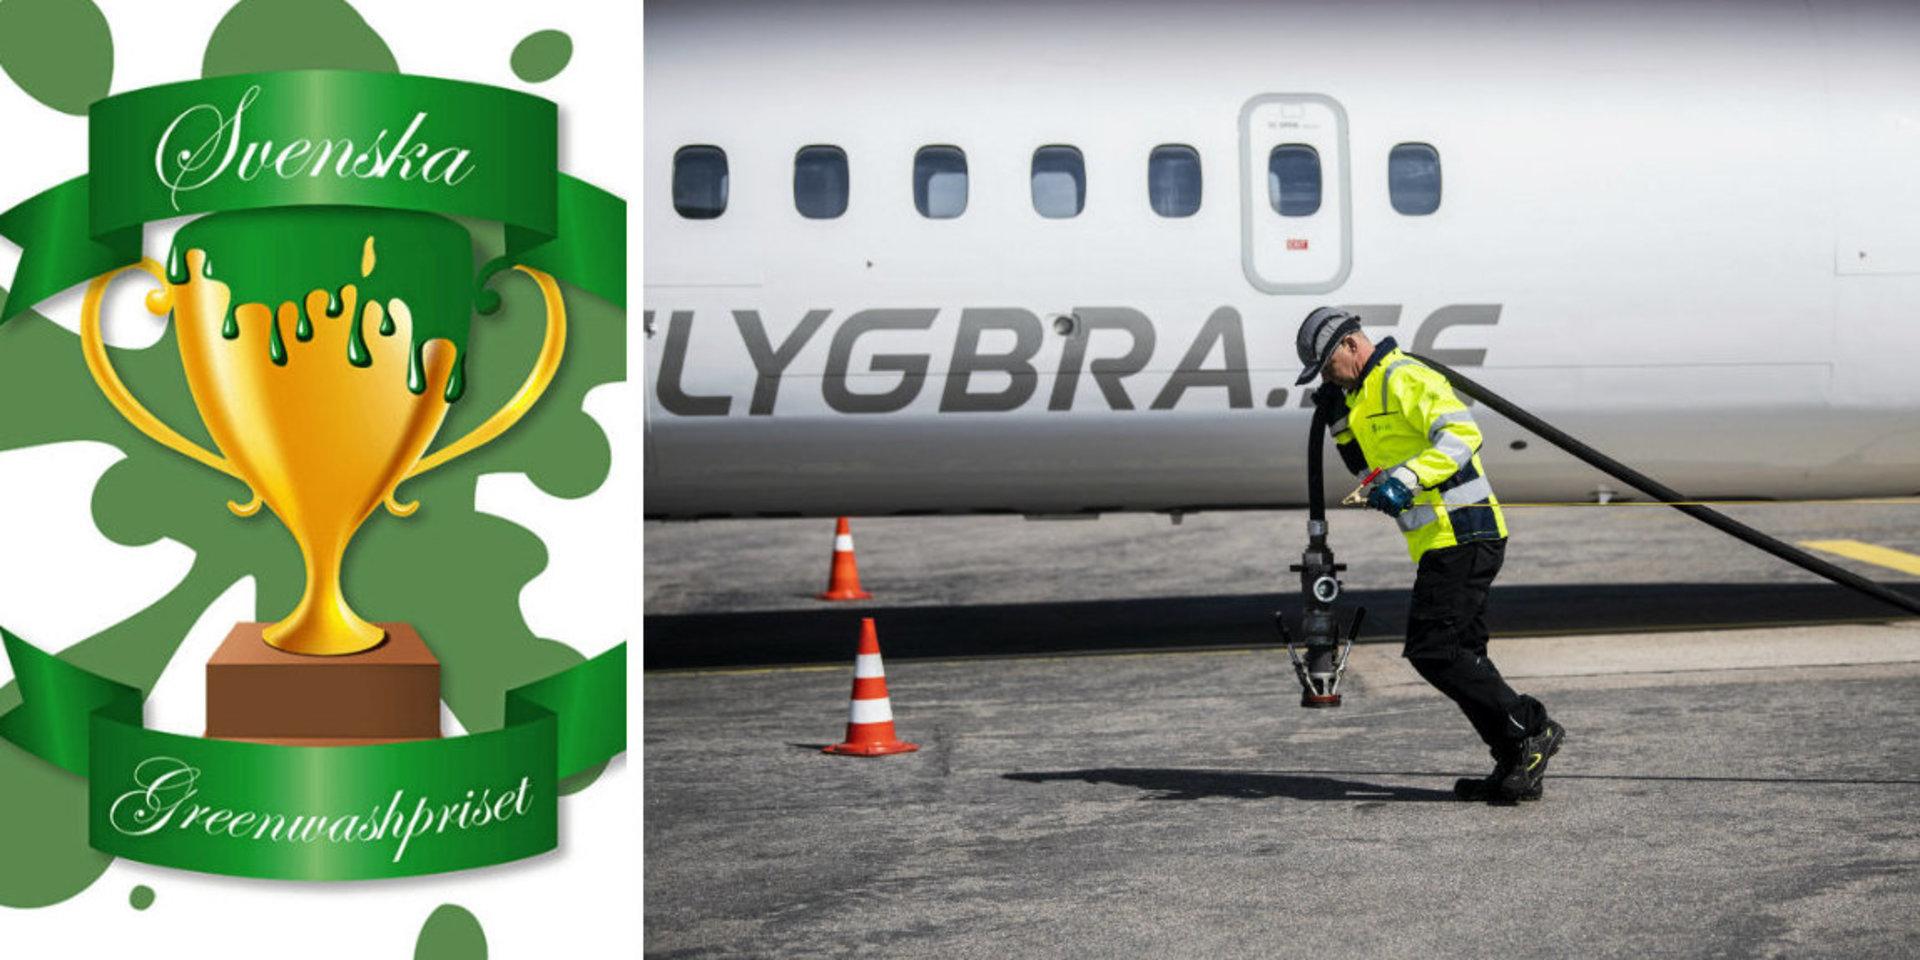 Flygbolaget BRA genomförde nyligen eventet ”Perfect flight” i Halmstad, men anklagas nu av miljöorganisationen Jordens vänner för &quot;grön skönmålning&quot; och nomineras till Svenska Greenwashpriset 2019”.